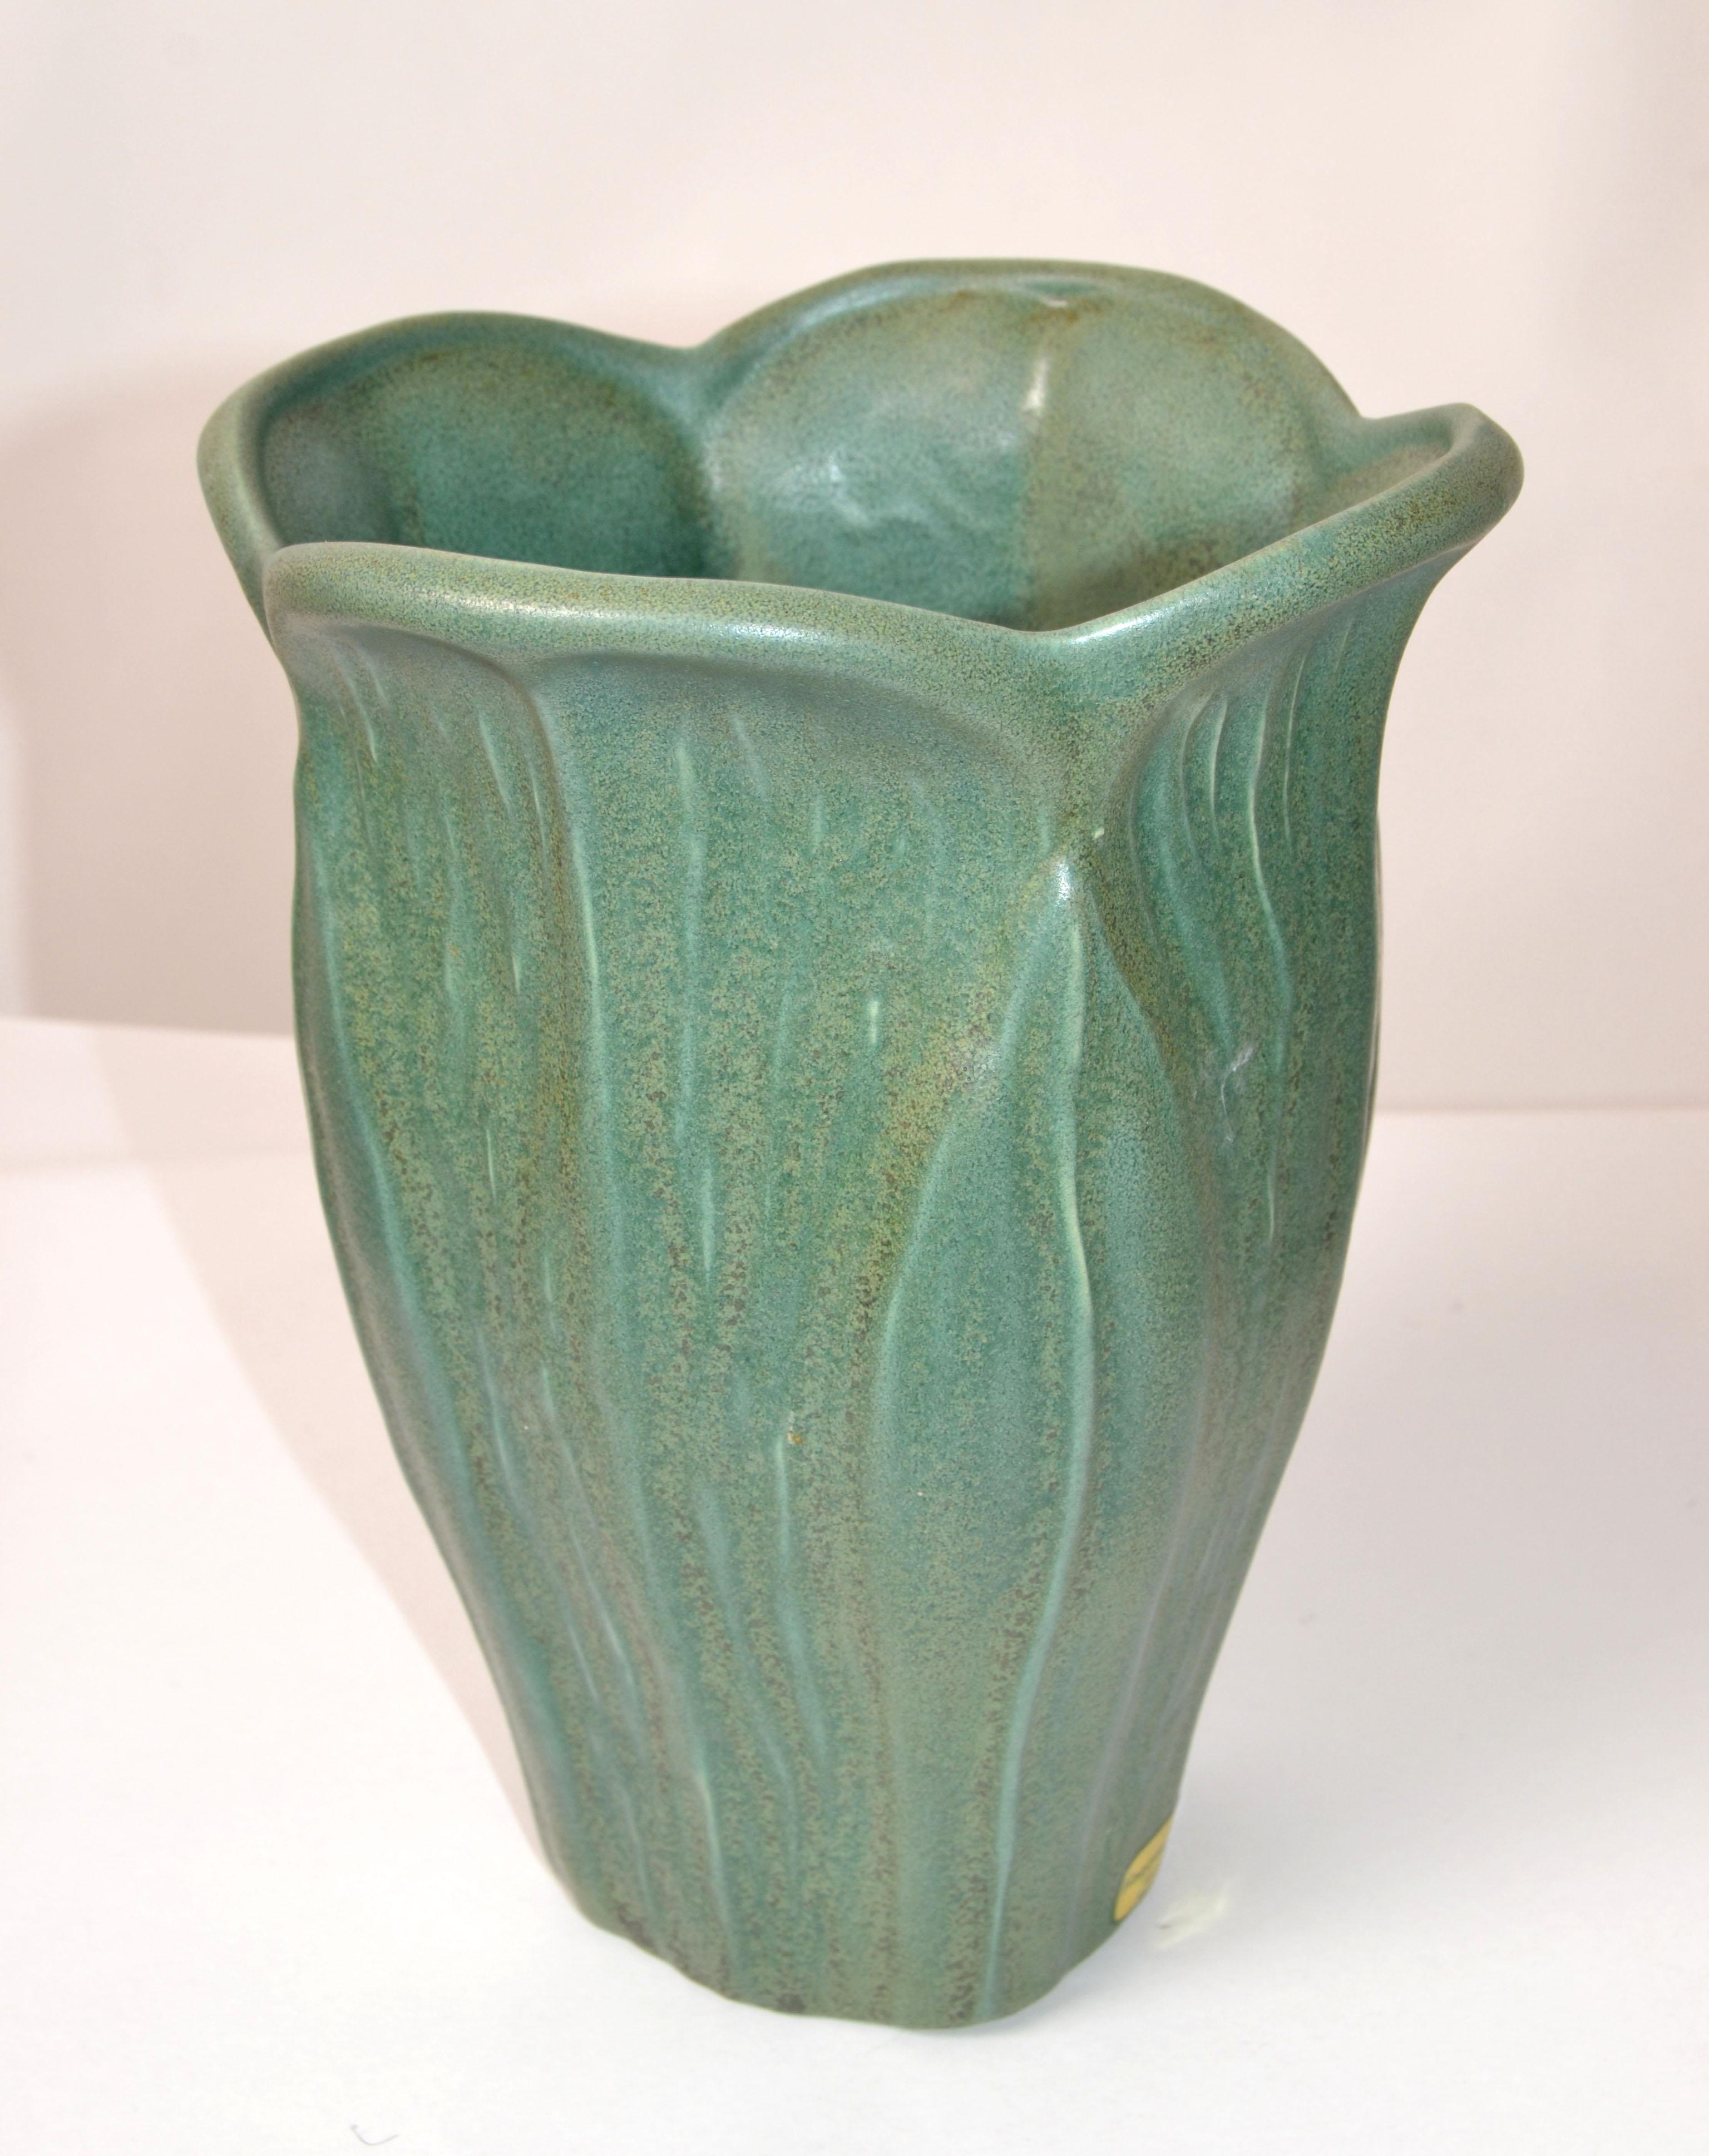 Vase à fleurs original en poterie artisanale Haeger Floral du milieu du siècle dernier, en glaçure vert menthe. Fabriqué en Amérique.
Étiquette d'origine à la base.
Impressionnant et pratique à la fois.